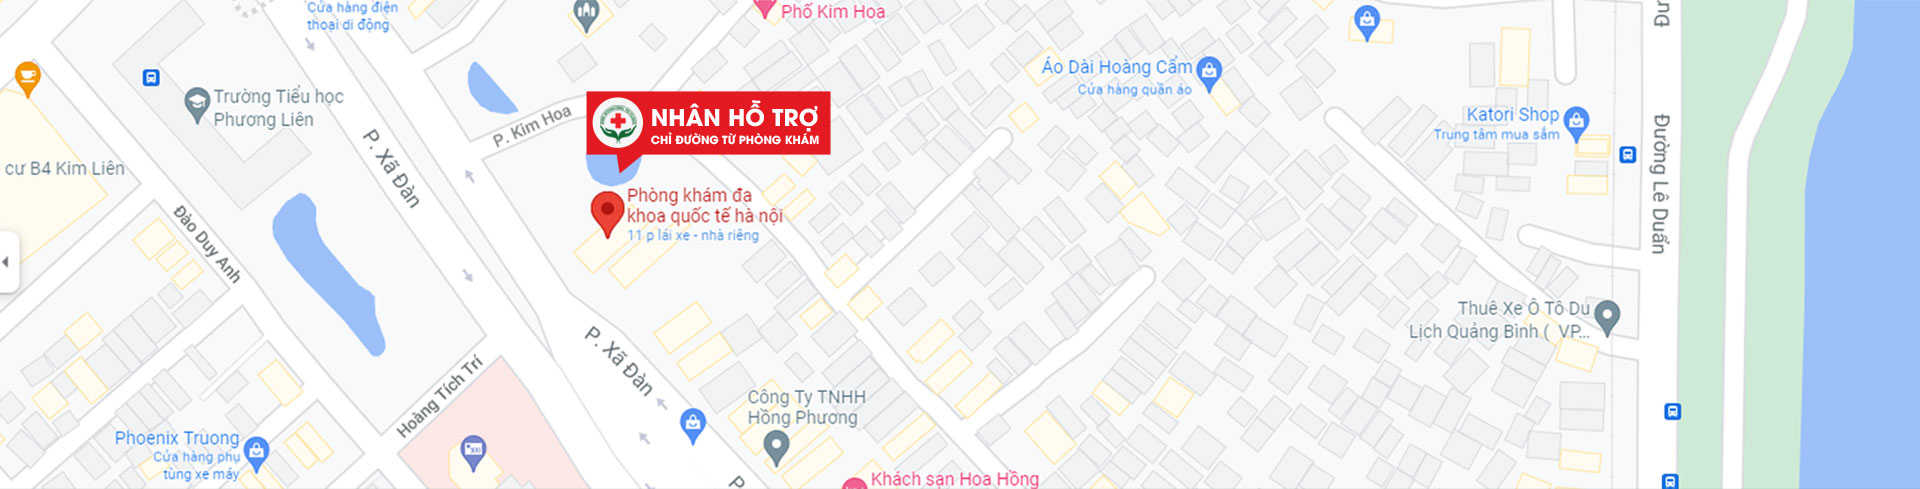 Bản đồ chỉ đường đến phòng khám đa khoa quốc tế Hà Nội 152 Xã Đàn